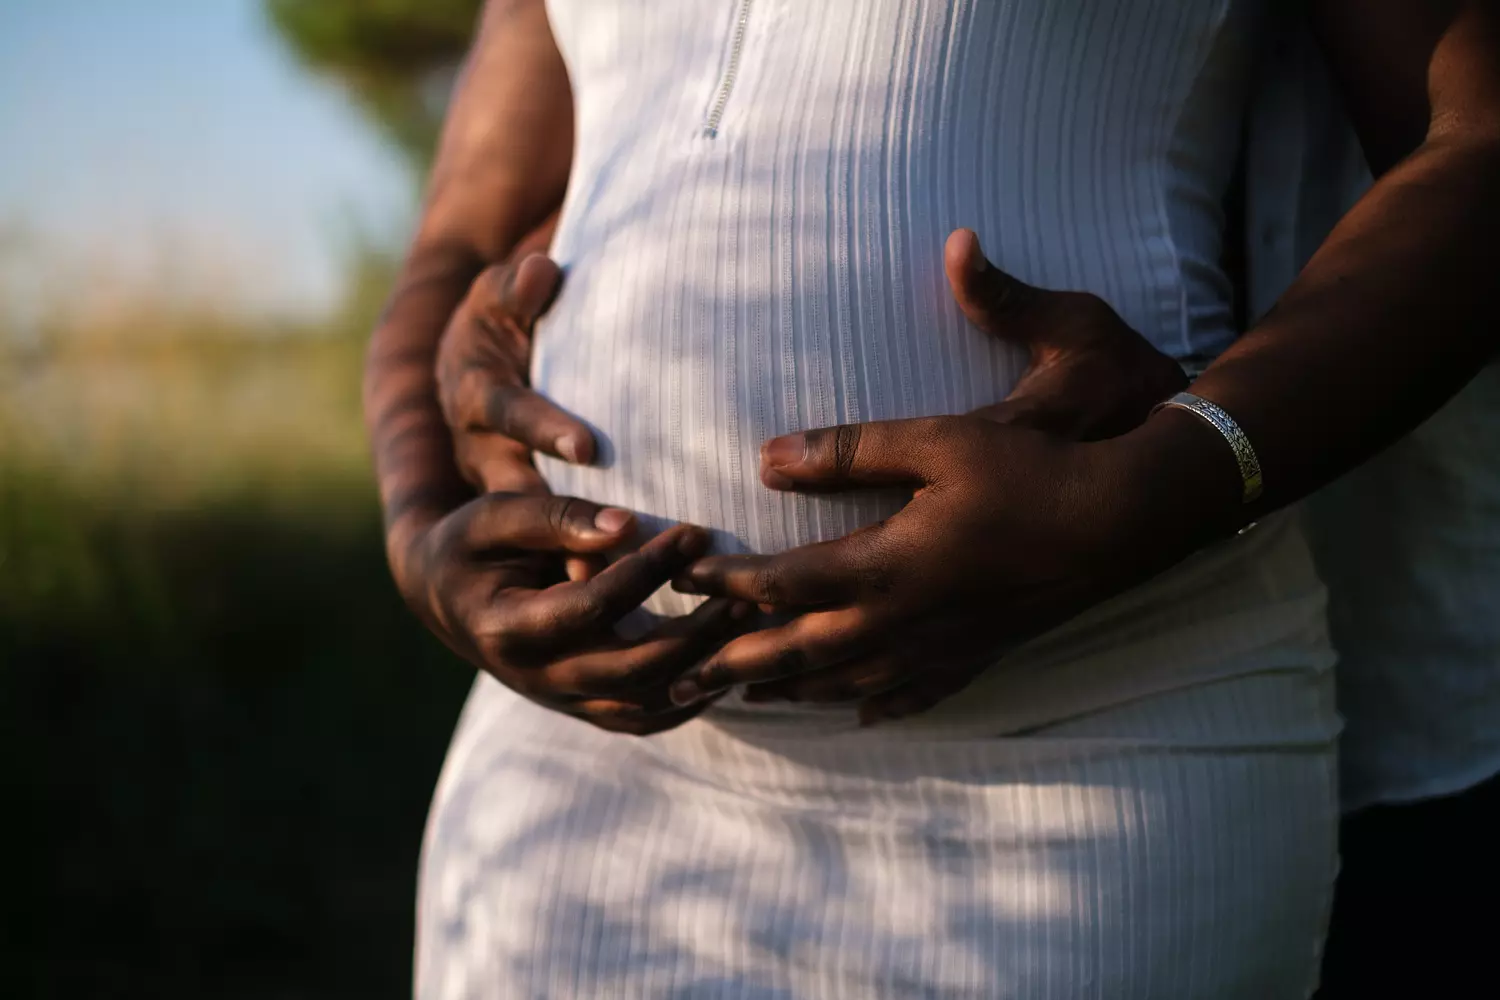 zwangerschap - zwangere vrouw houdt buik vast